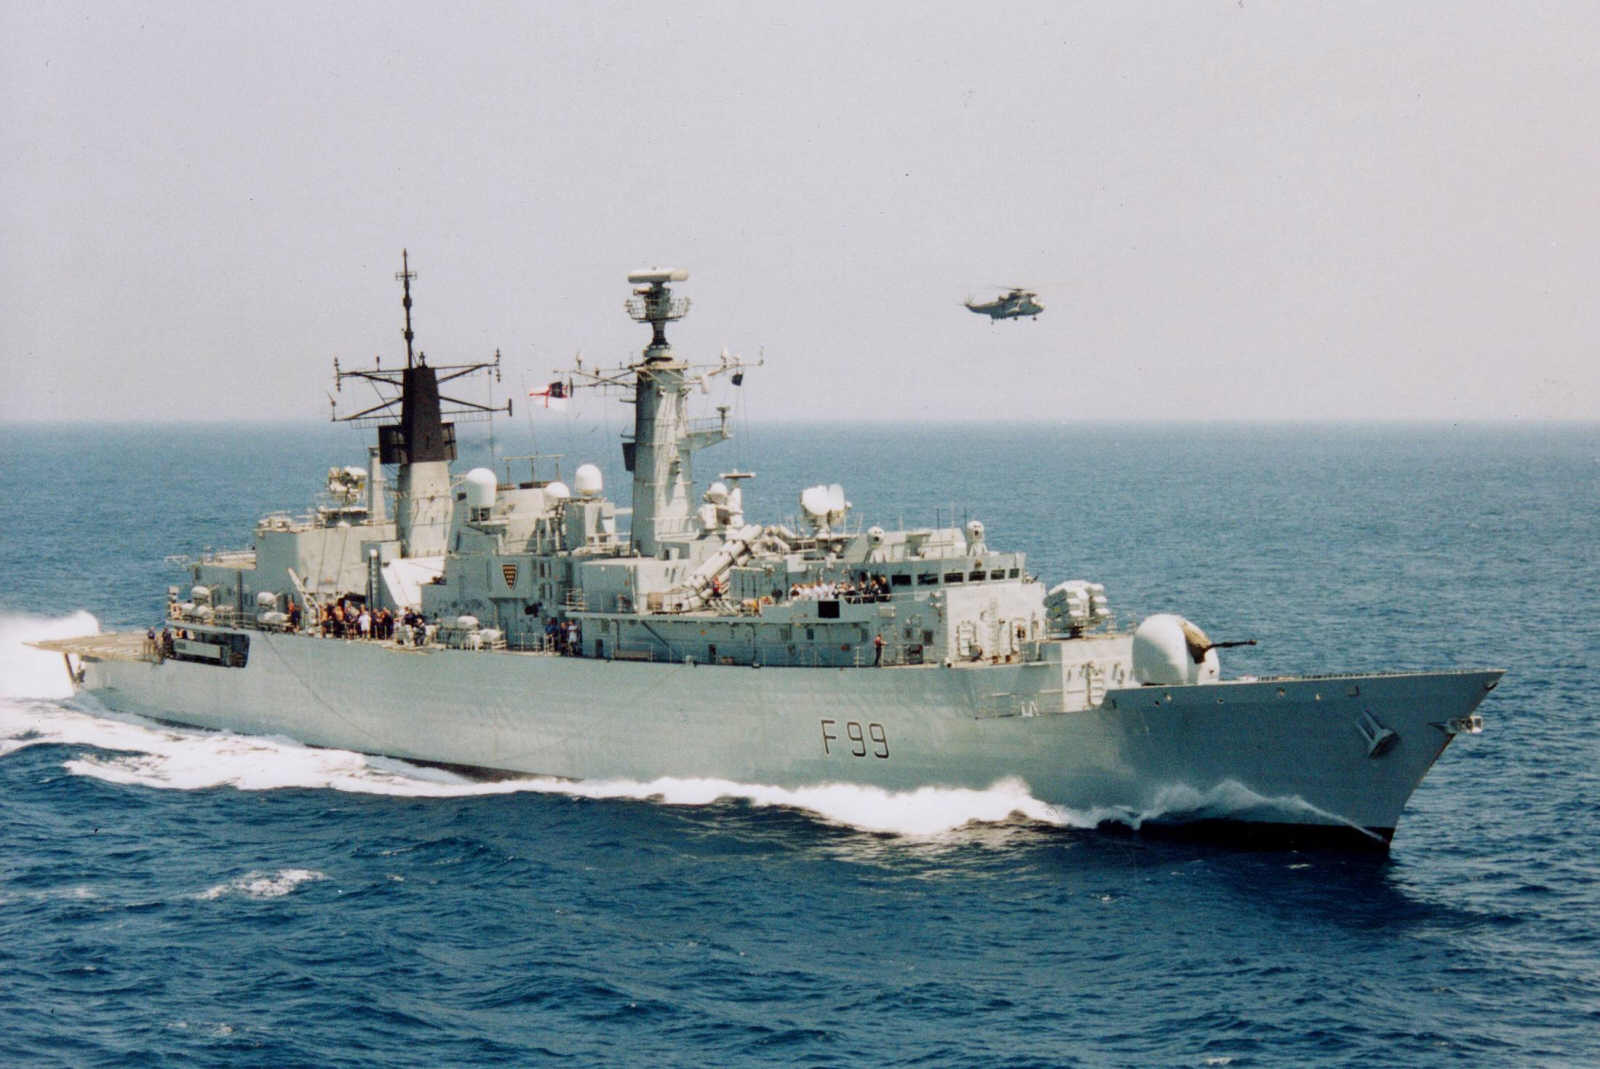 A Cornwall atravessando o Estreito de Gibraltar e entrando no Atlântico em julho de 2003. (foto: ?)